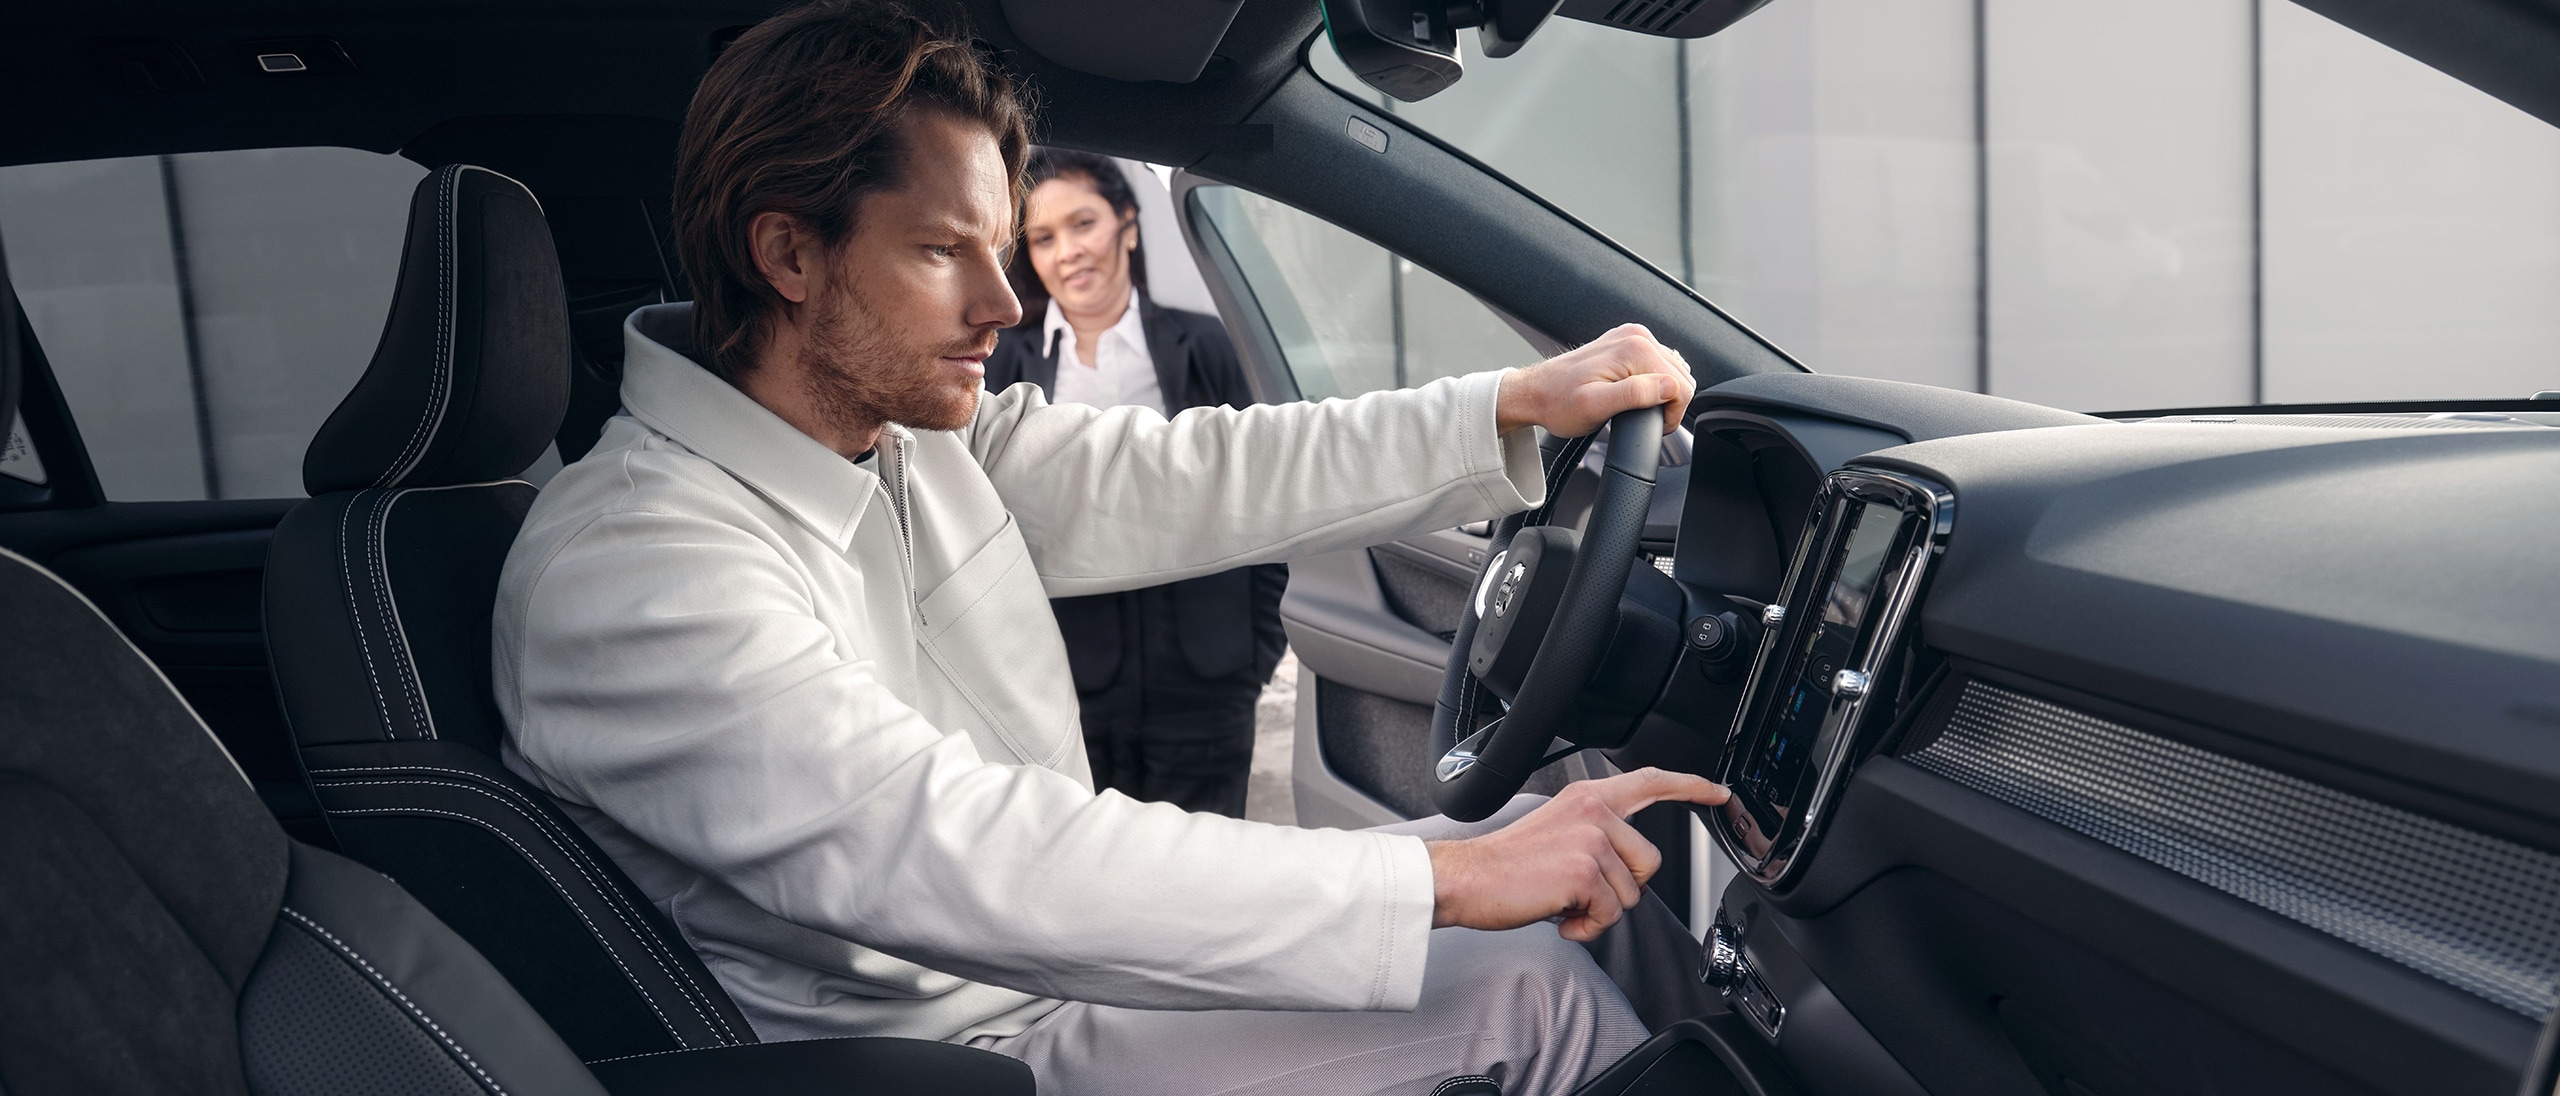 Mies istuu Volvo XC40 auton kuljettajan paikalla ja tutkii kojelaudan näyttöä.